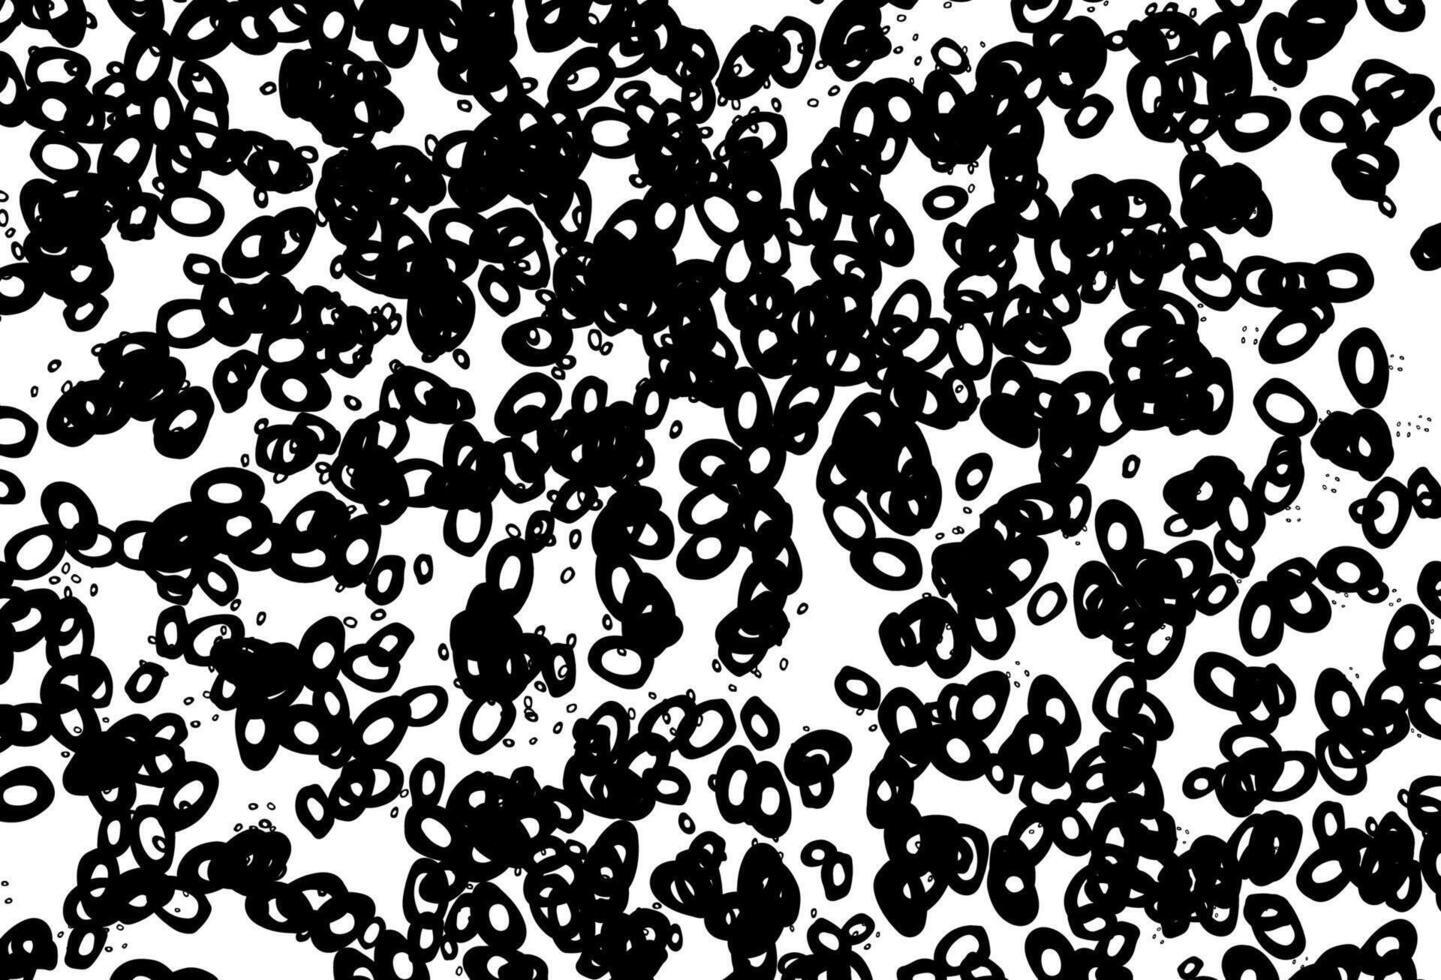 fundo preto e branco do vetor com bolhas.